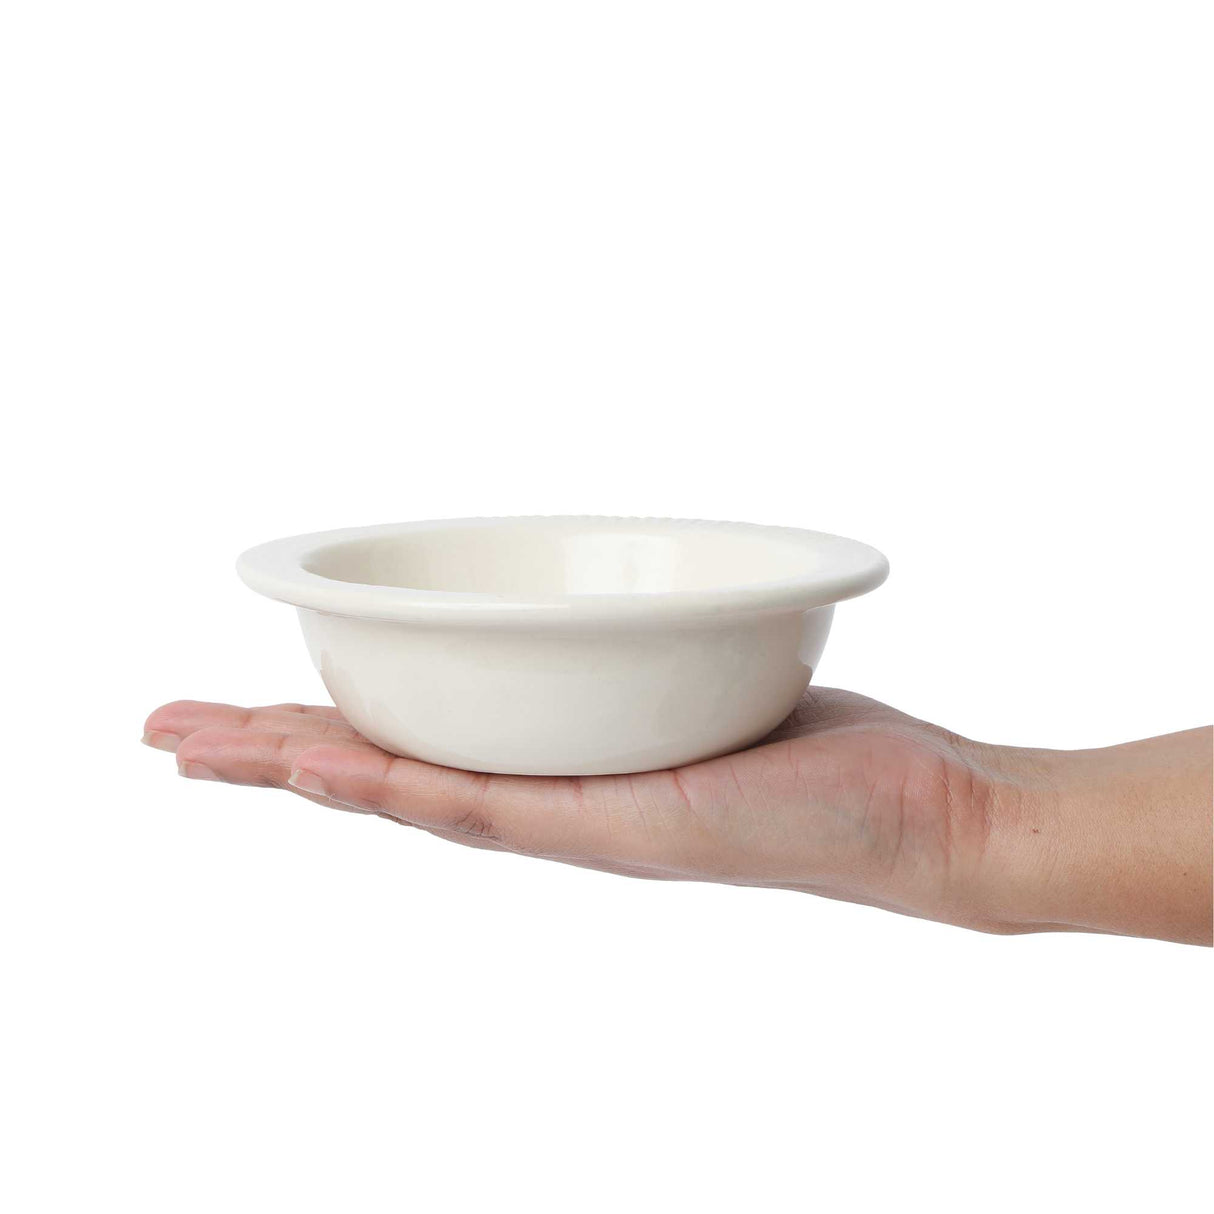 White ceramic bowl in hand